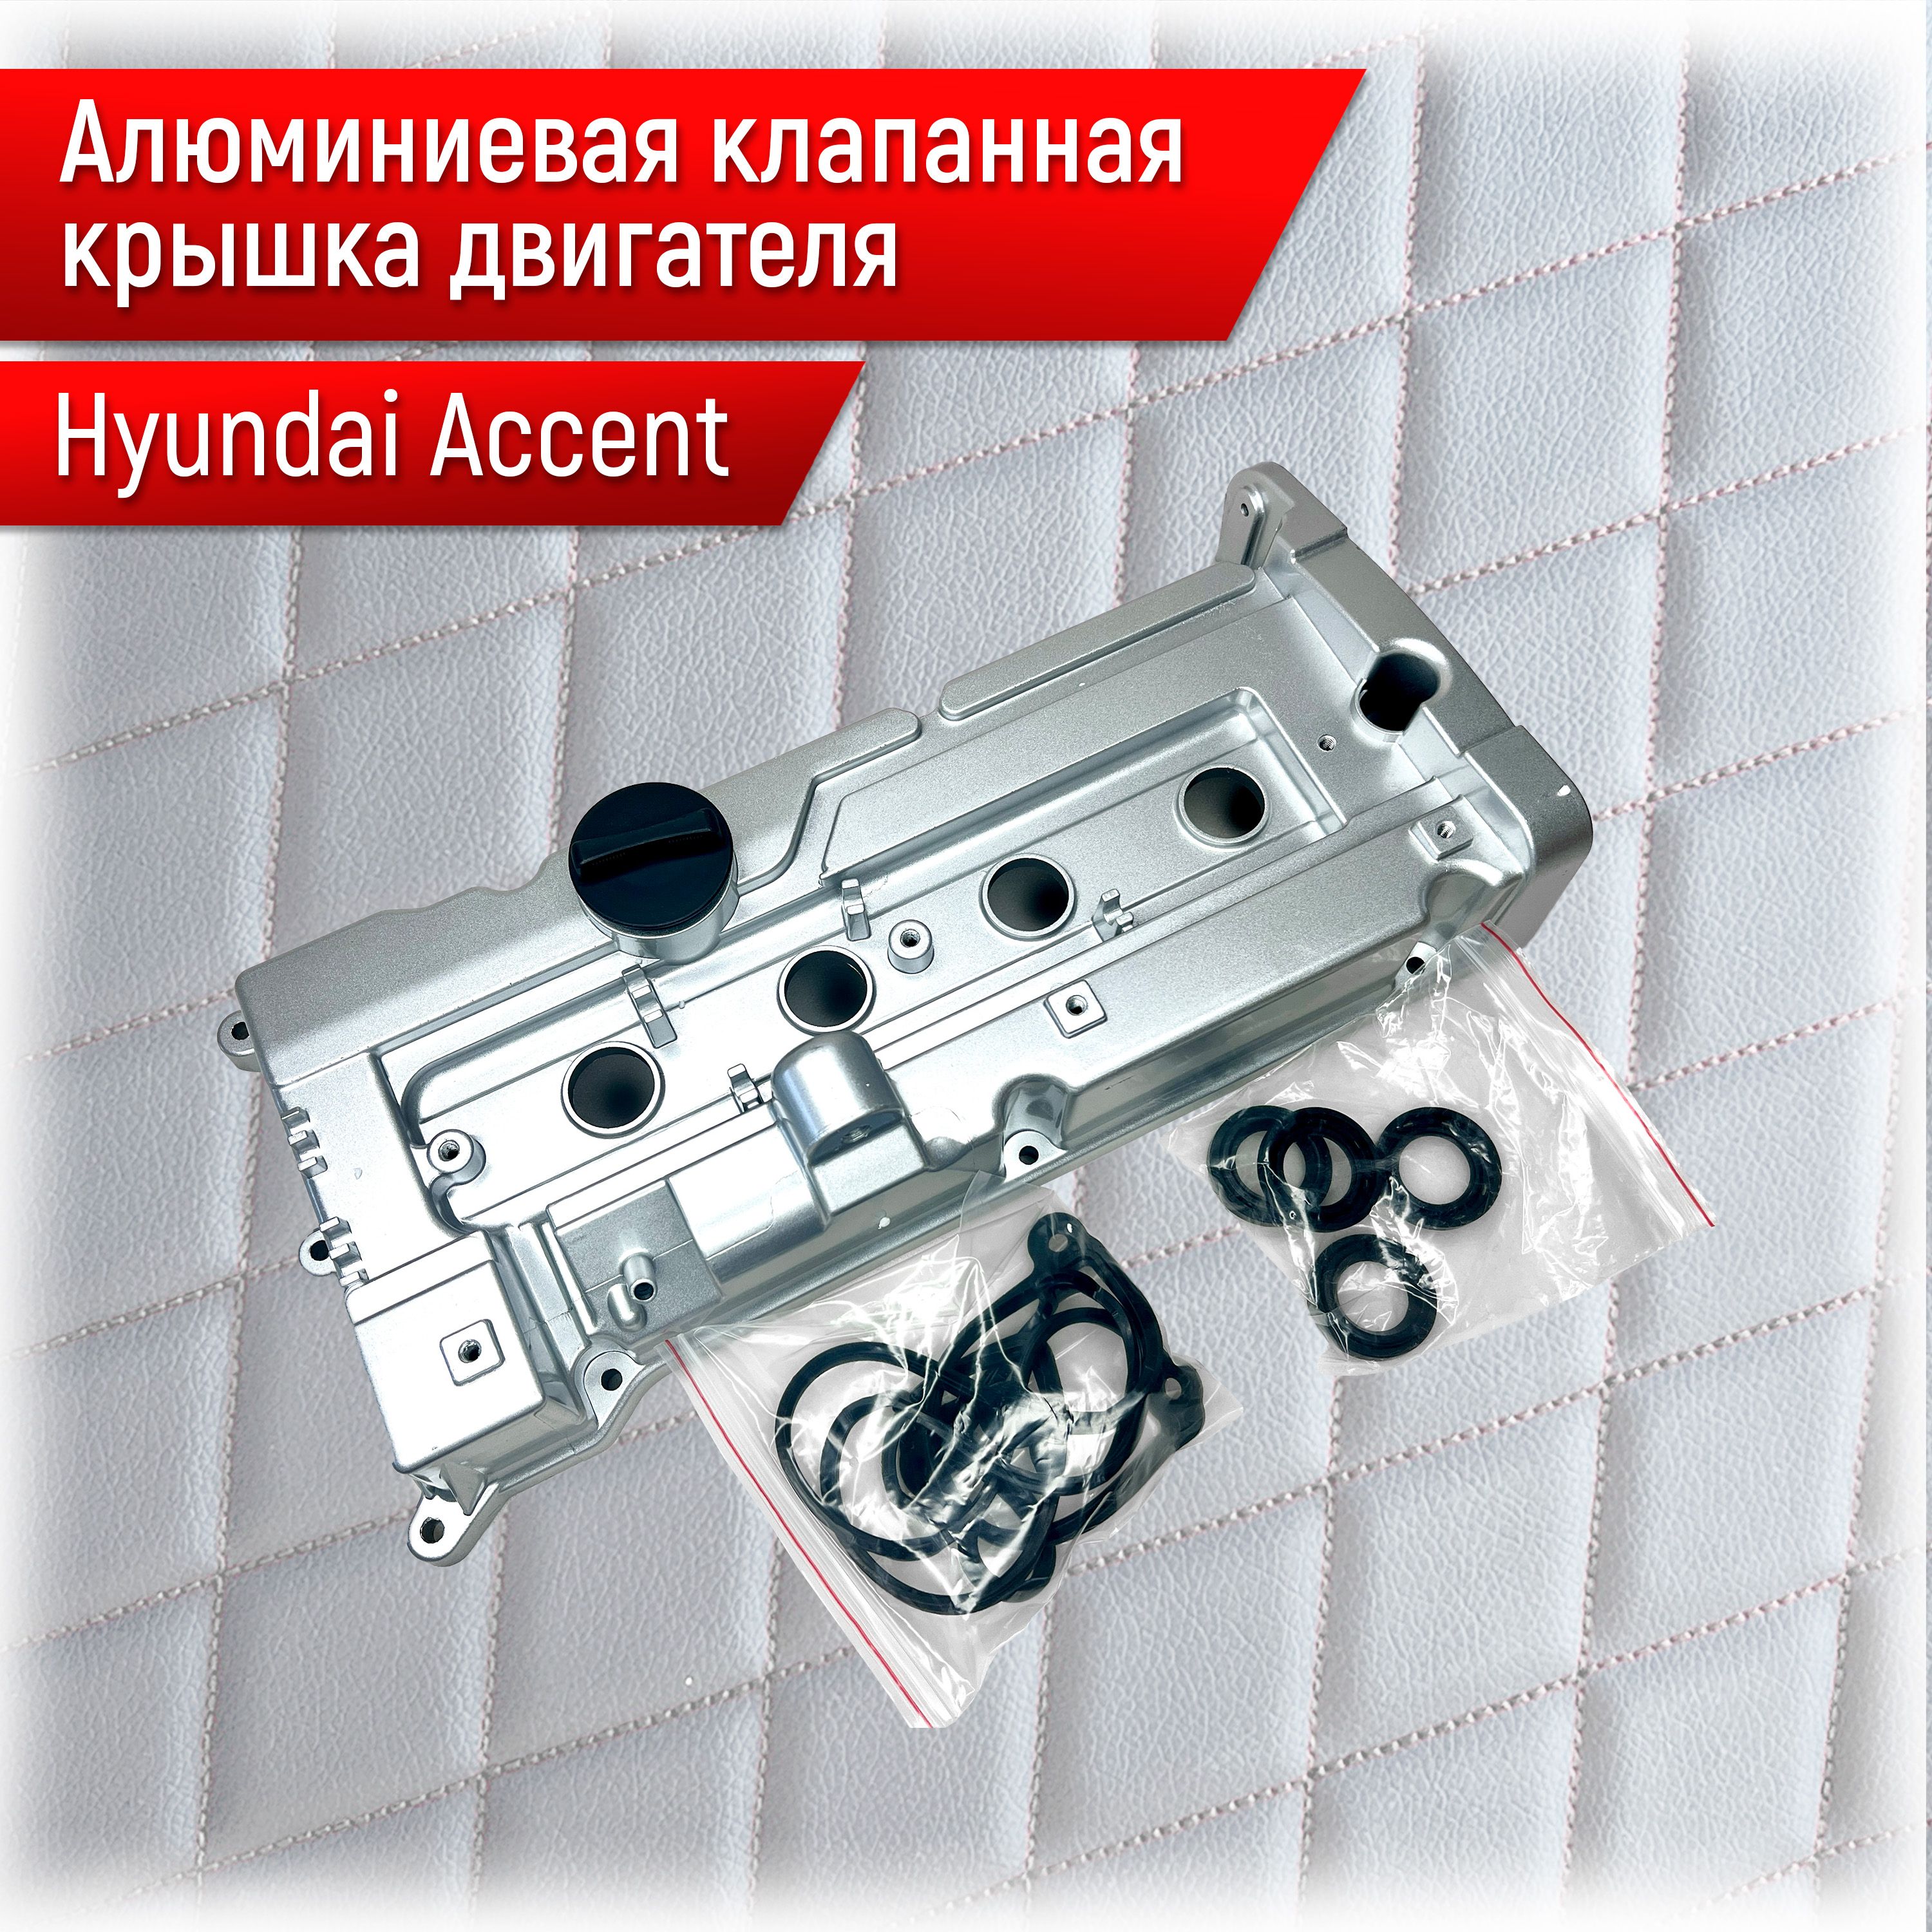 Более 44 передних крышек двигателя для HYUNDAI ACCENT в каталоге интернет-магазина